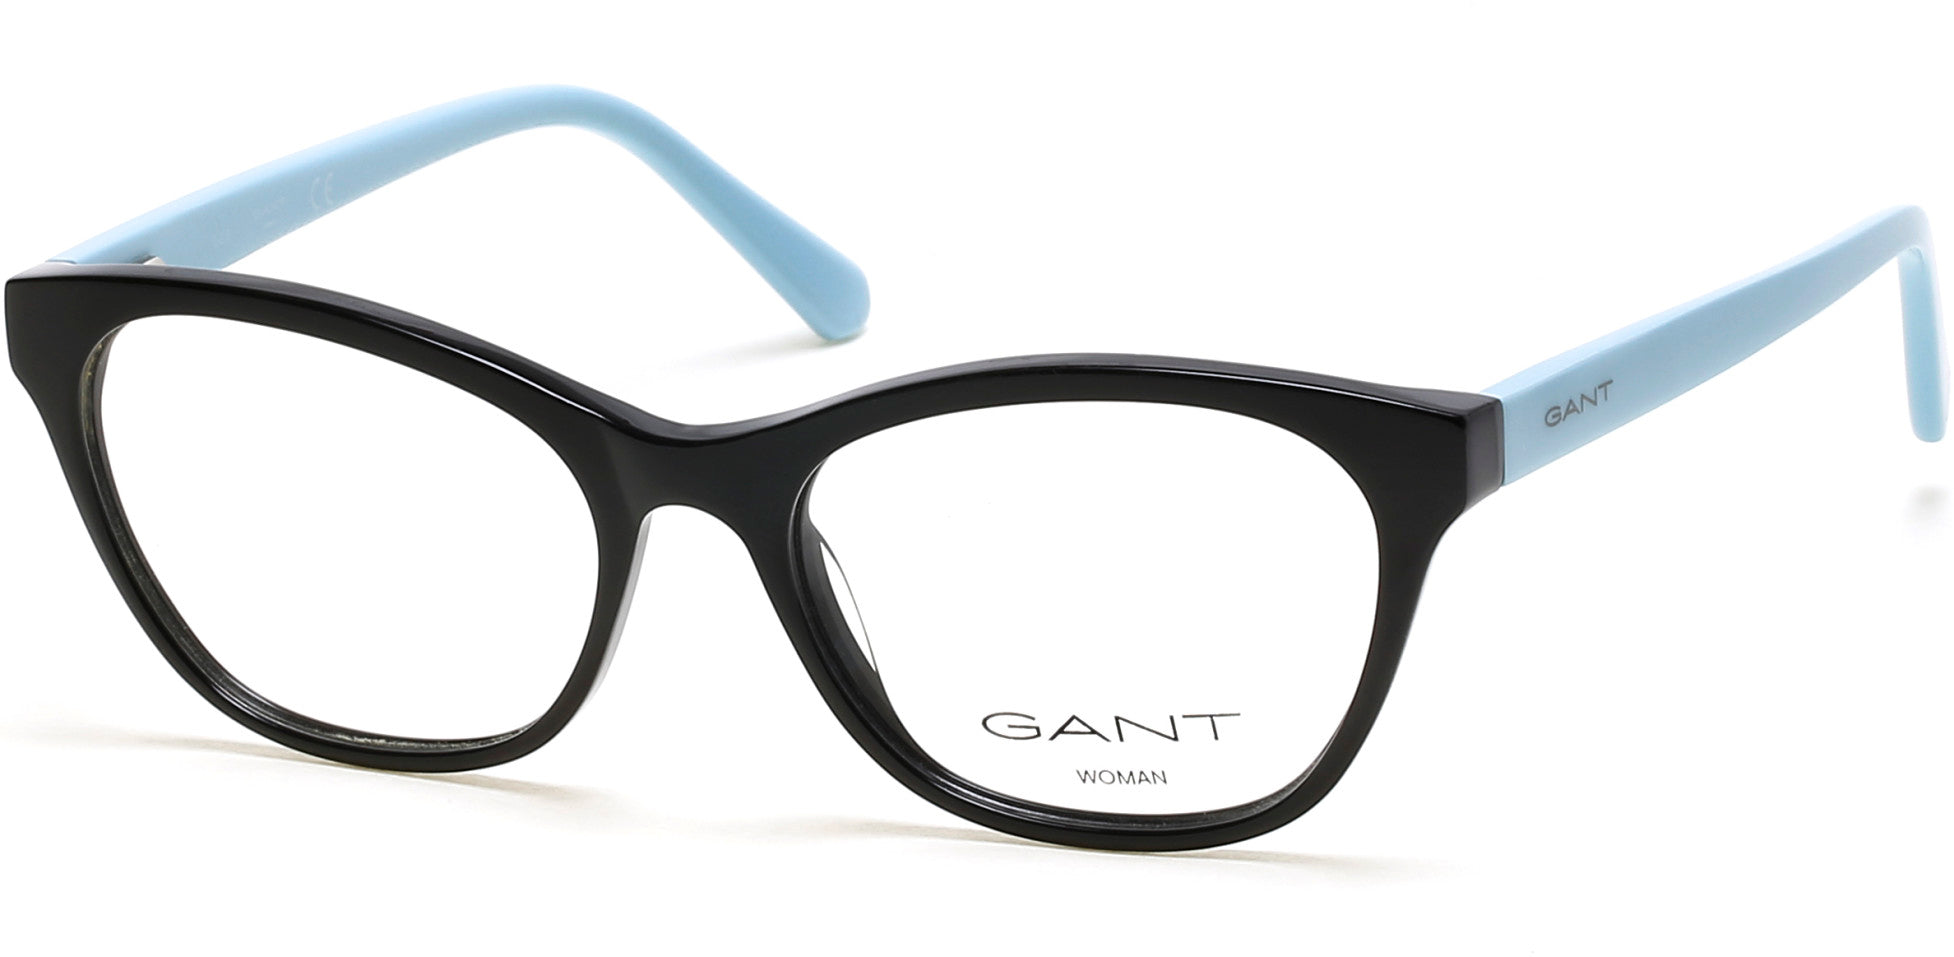 Gant GA4099 Cat Eyeglasses 001-001 - Shiny Black